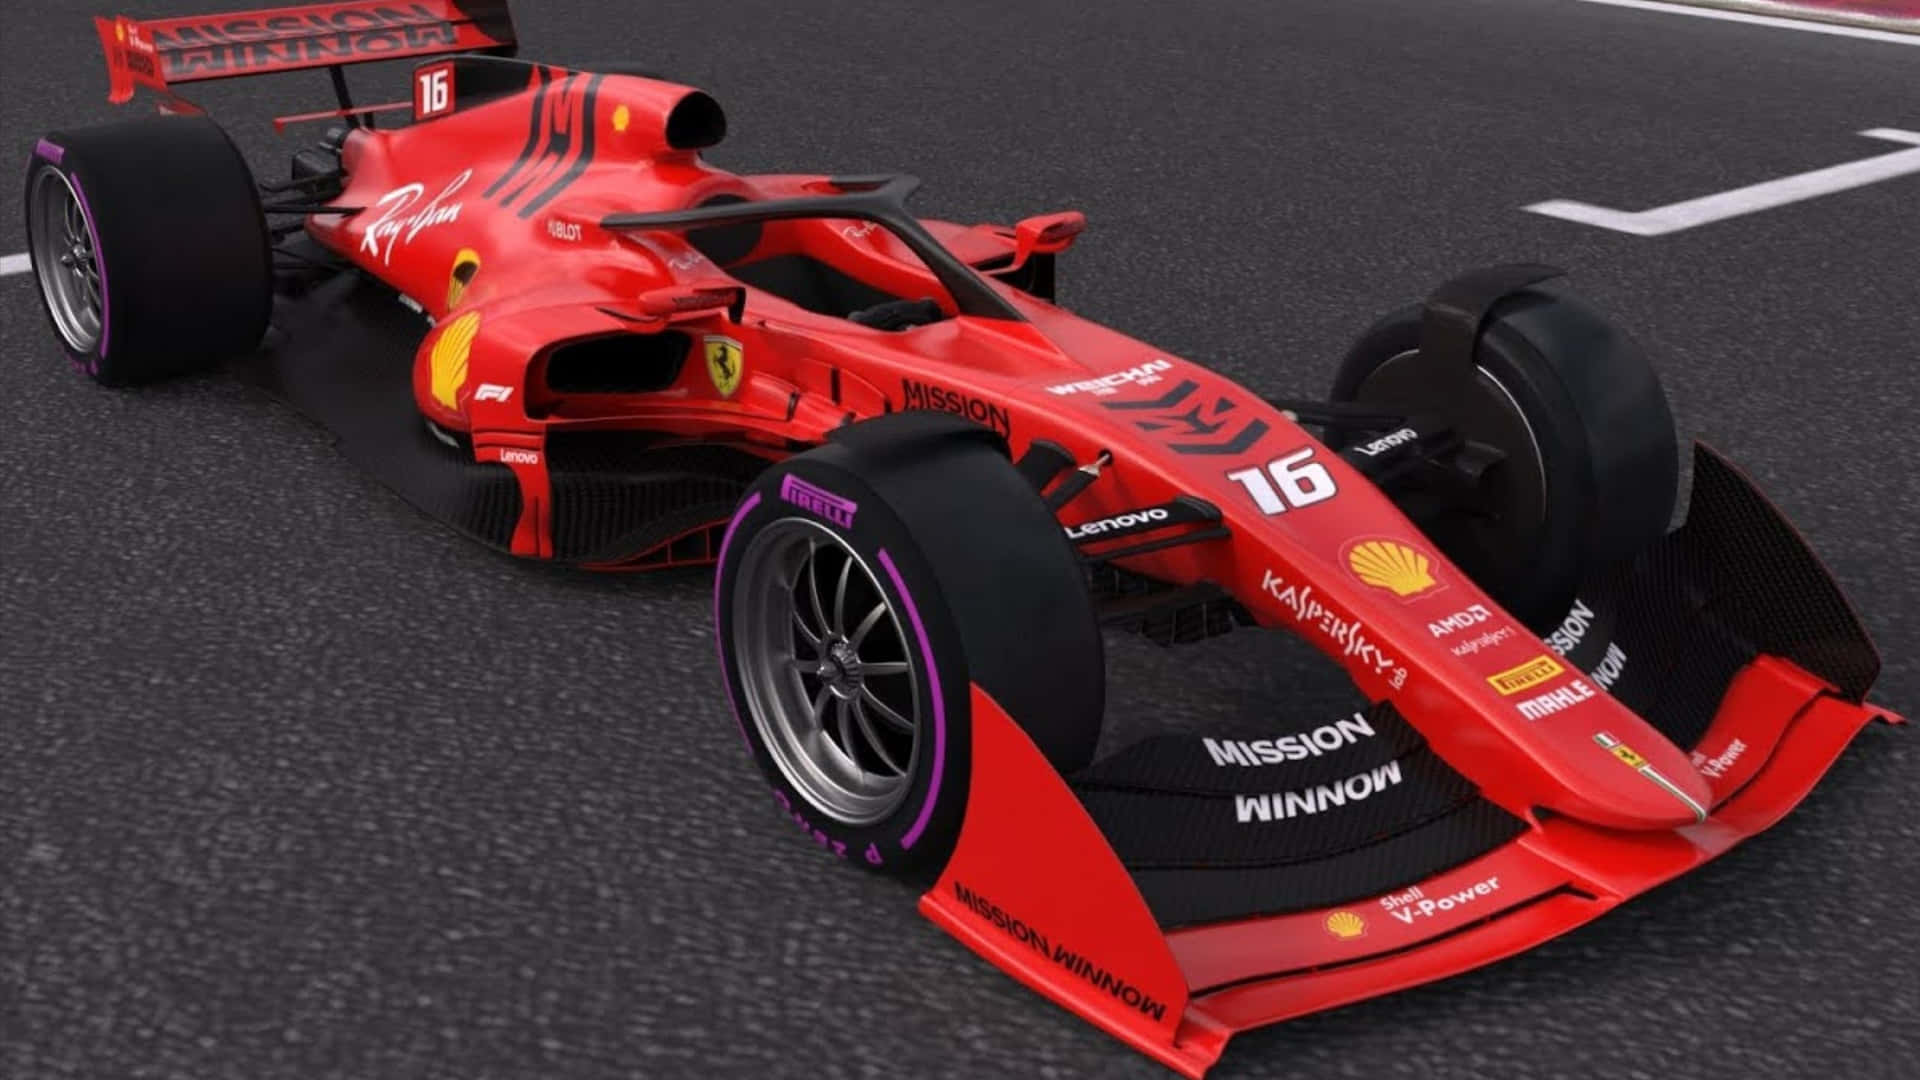 Ferrarif1-racerbil I Racet. Wallpaper